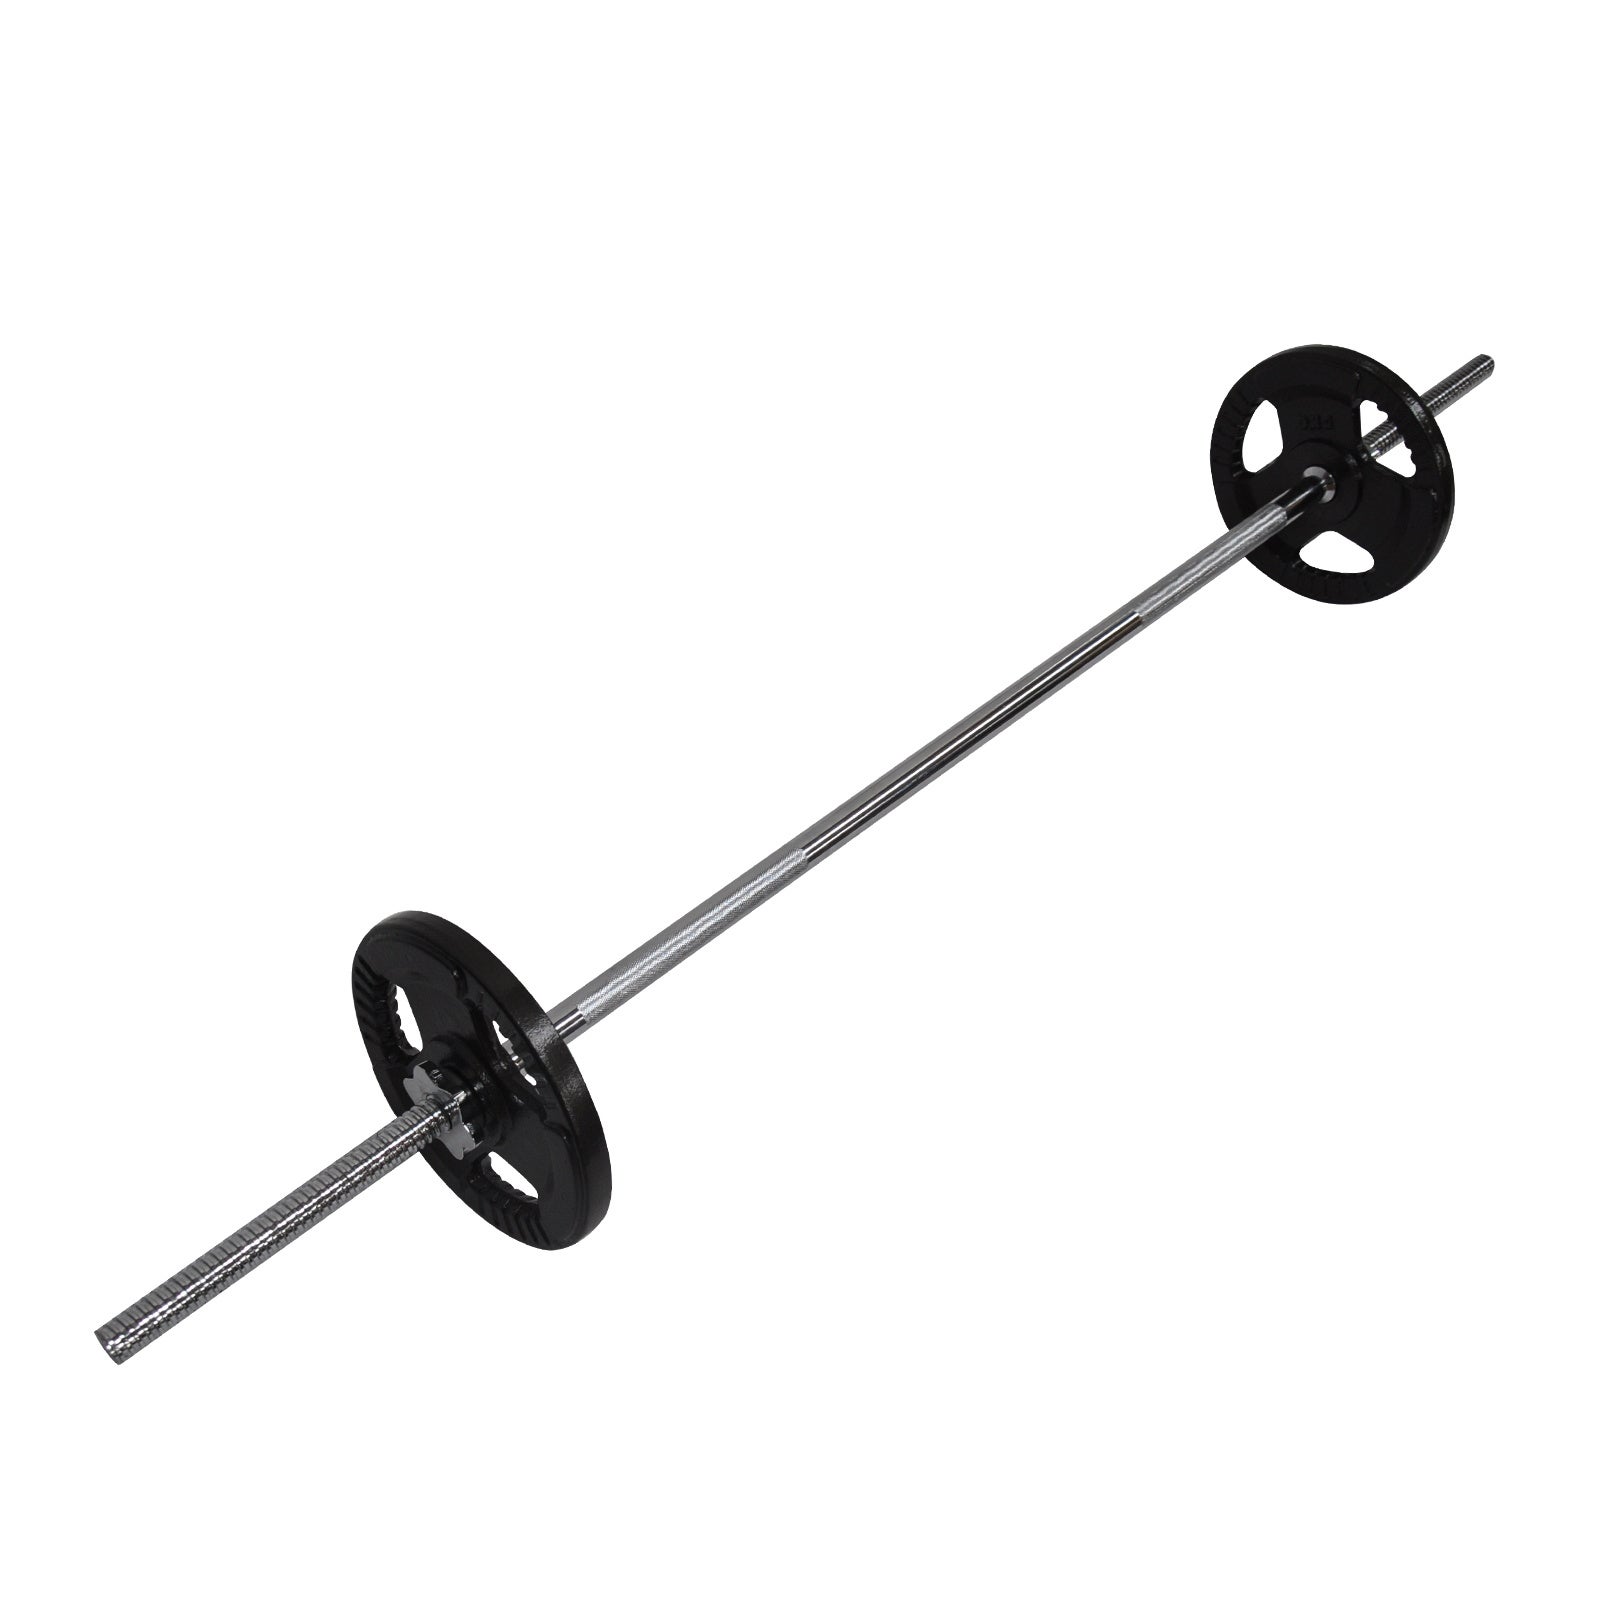 15kg Ez Grip Cast Iron Barbell Weight Set - 150cm Bar + 10kg Iron Weight Plates